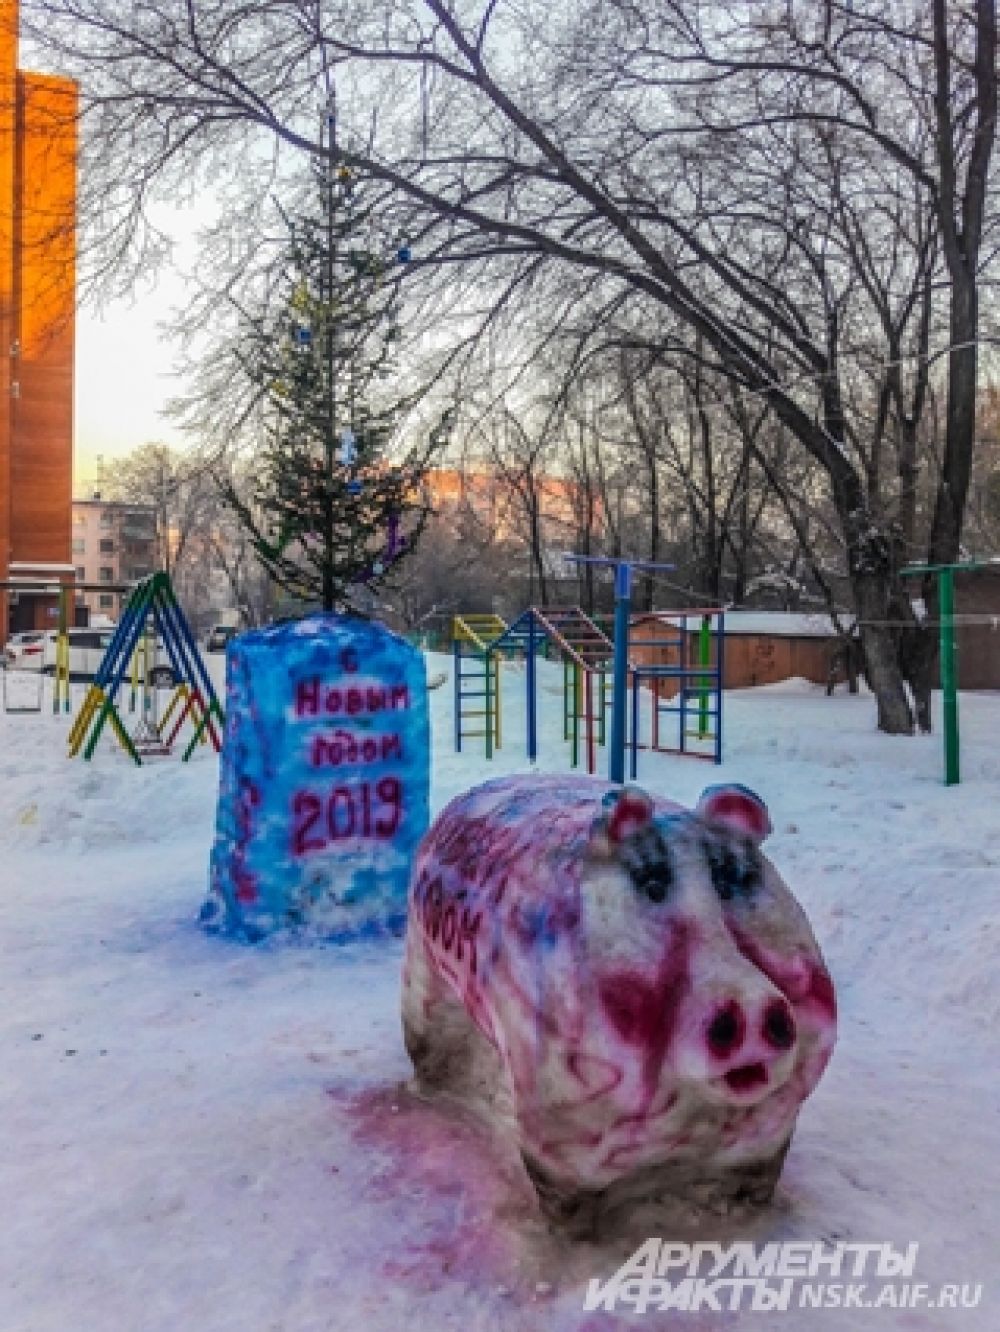 Символ года - одна из любимых тем для снежного творчества в Новосибирске.